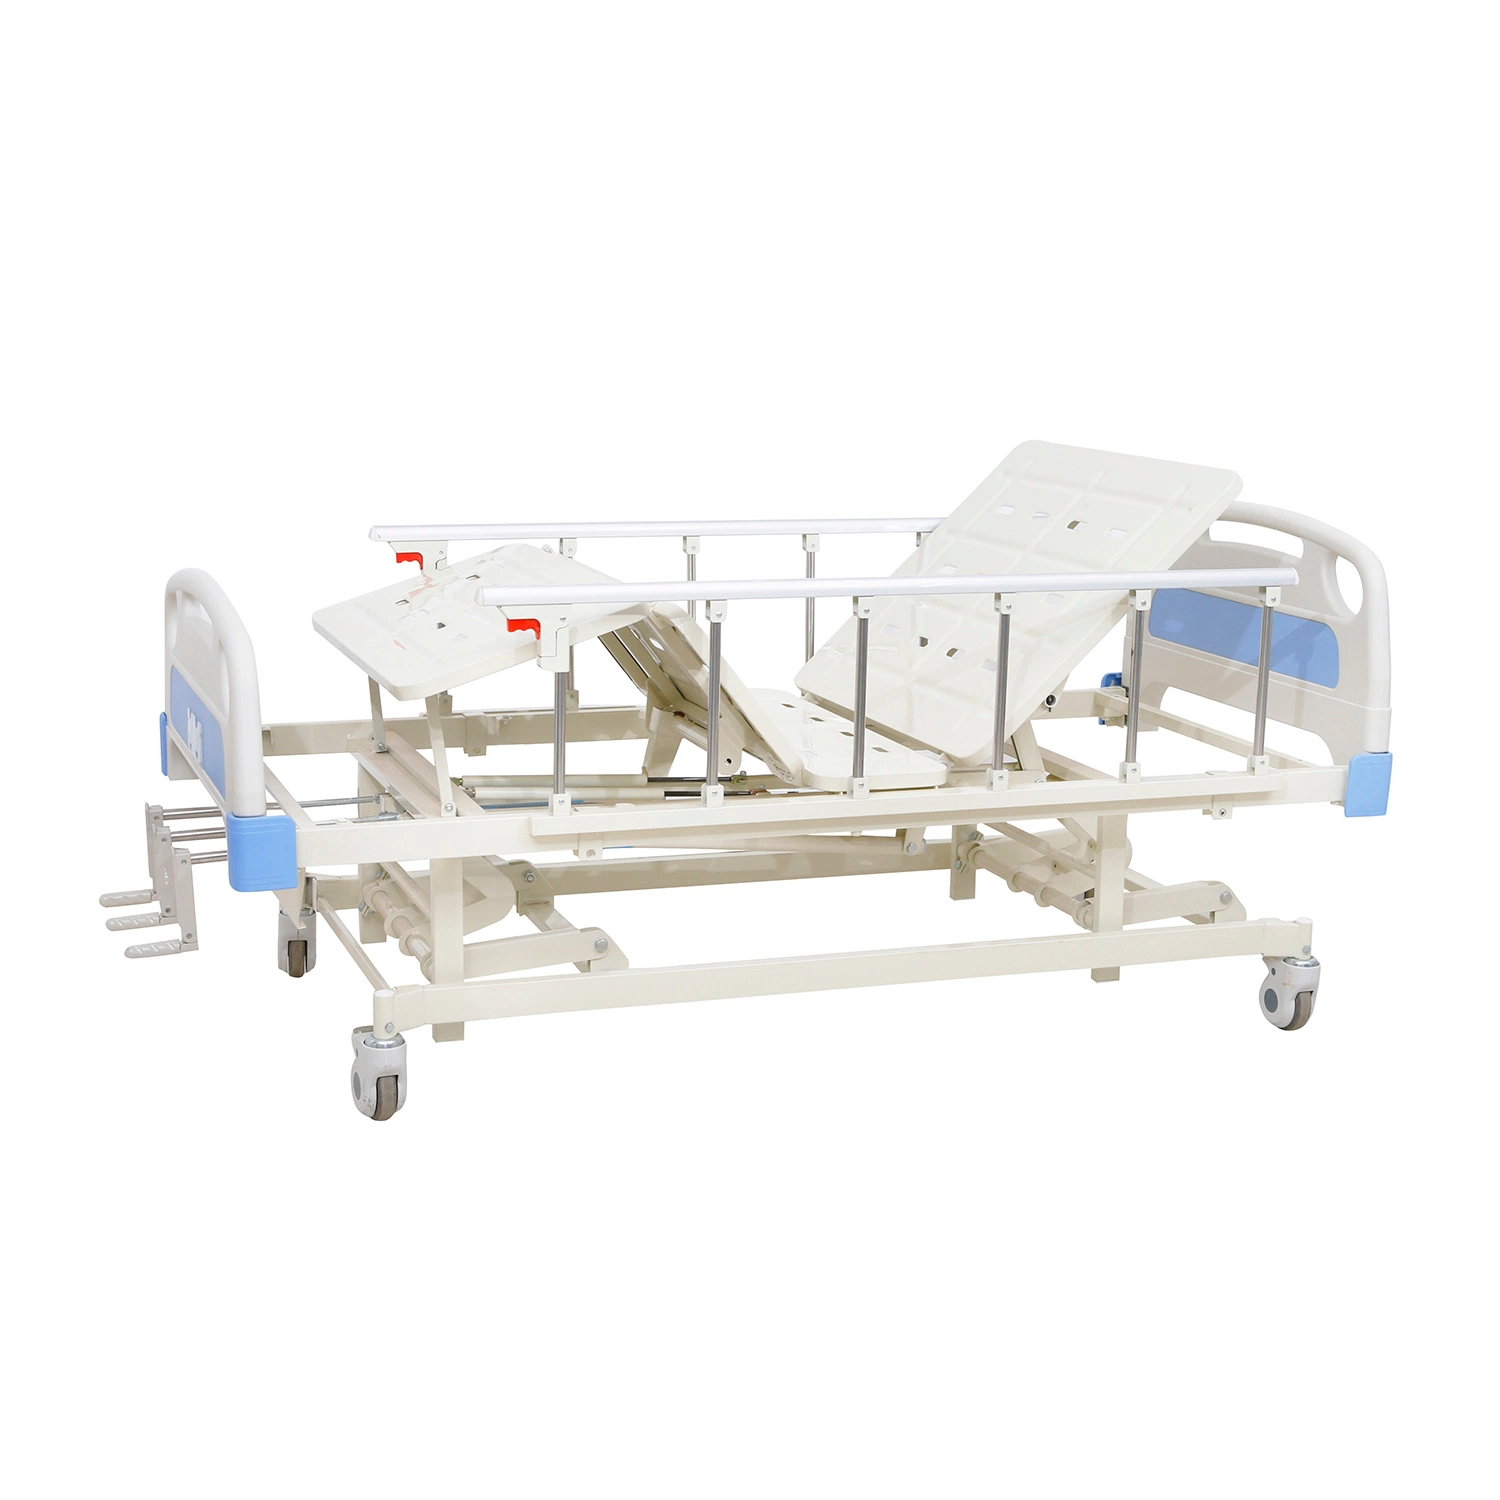 Duas funções Medical Bed duas manivelas Cama Manual médico Para venda de camas e mobiliário hospitalares